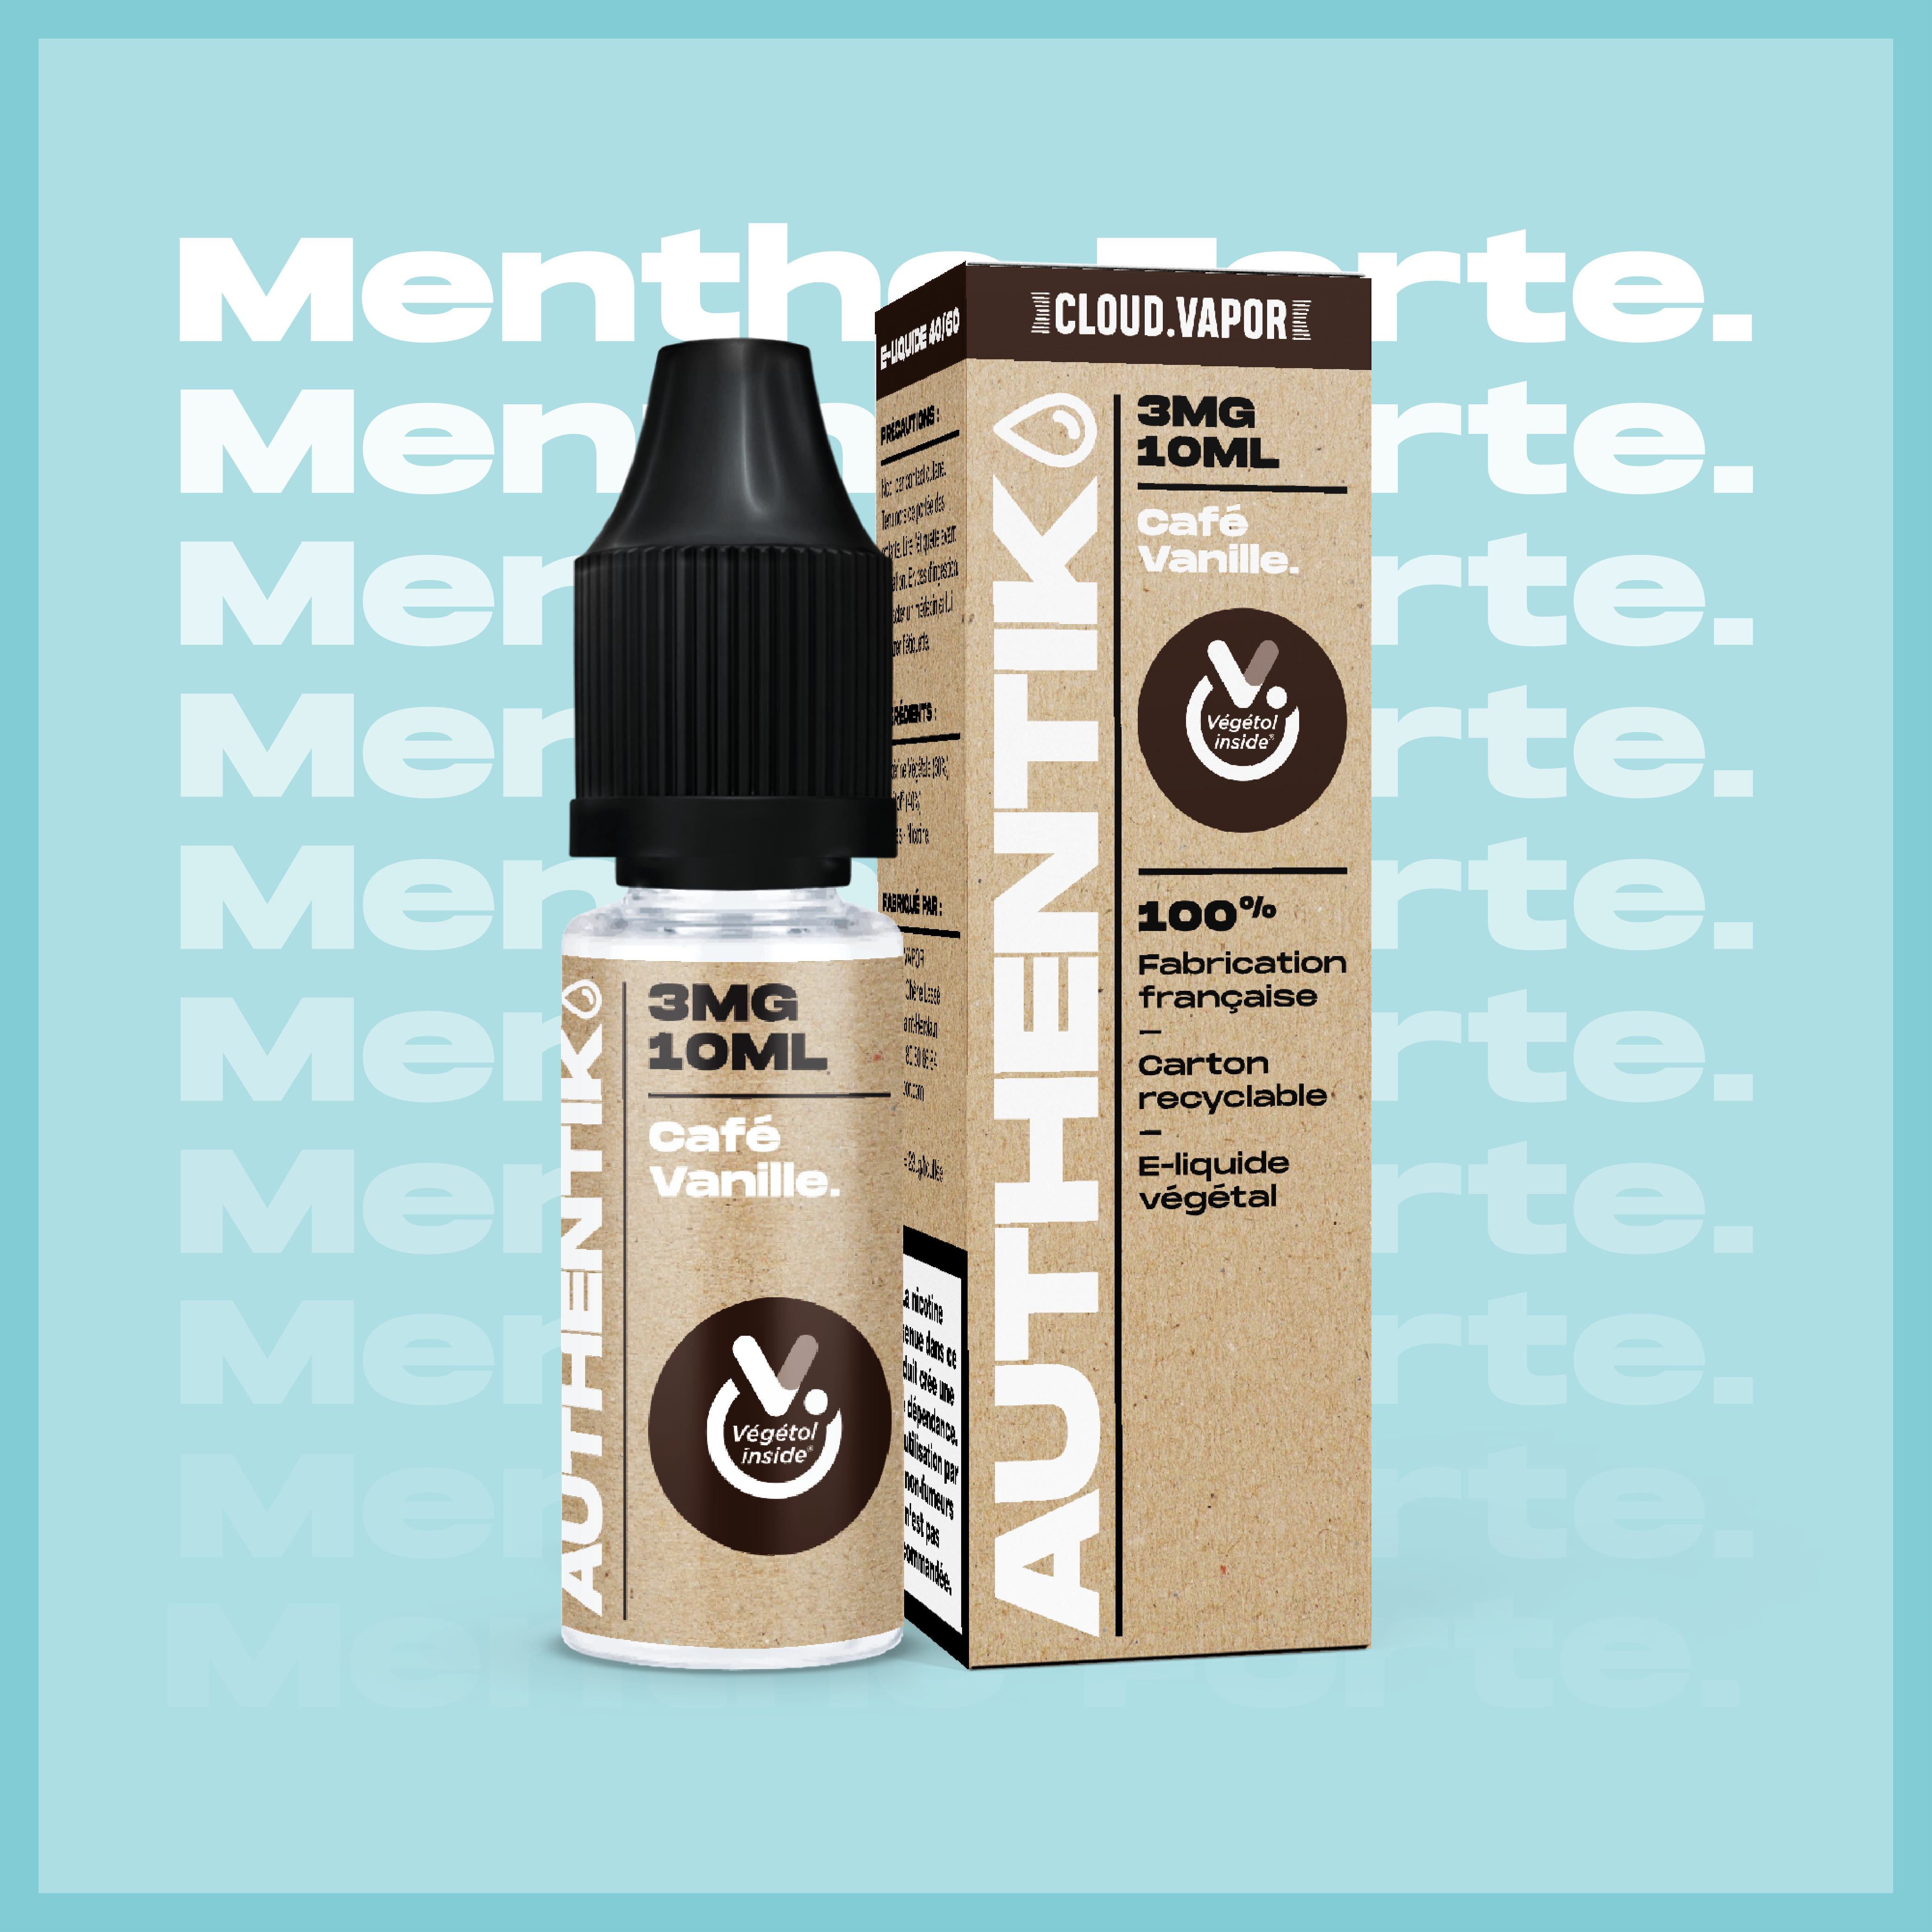 E-liquide MENTHE FORTE de la Gamme Authentik en format 10ml nicotiné goût menthe forte